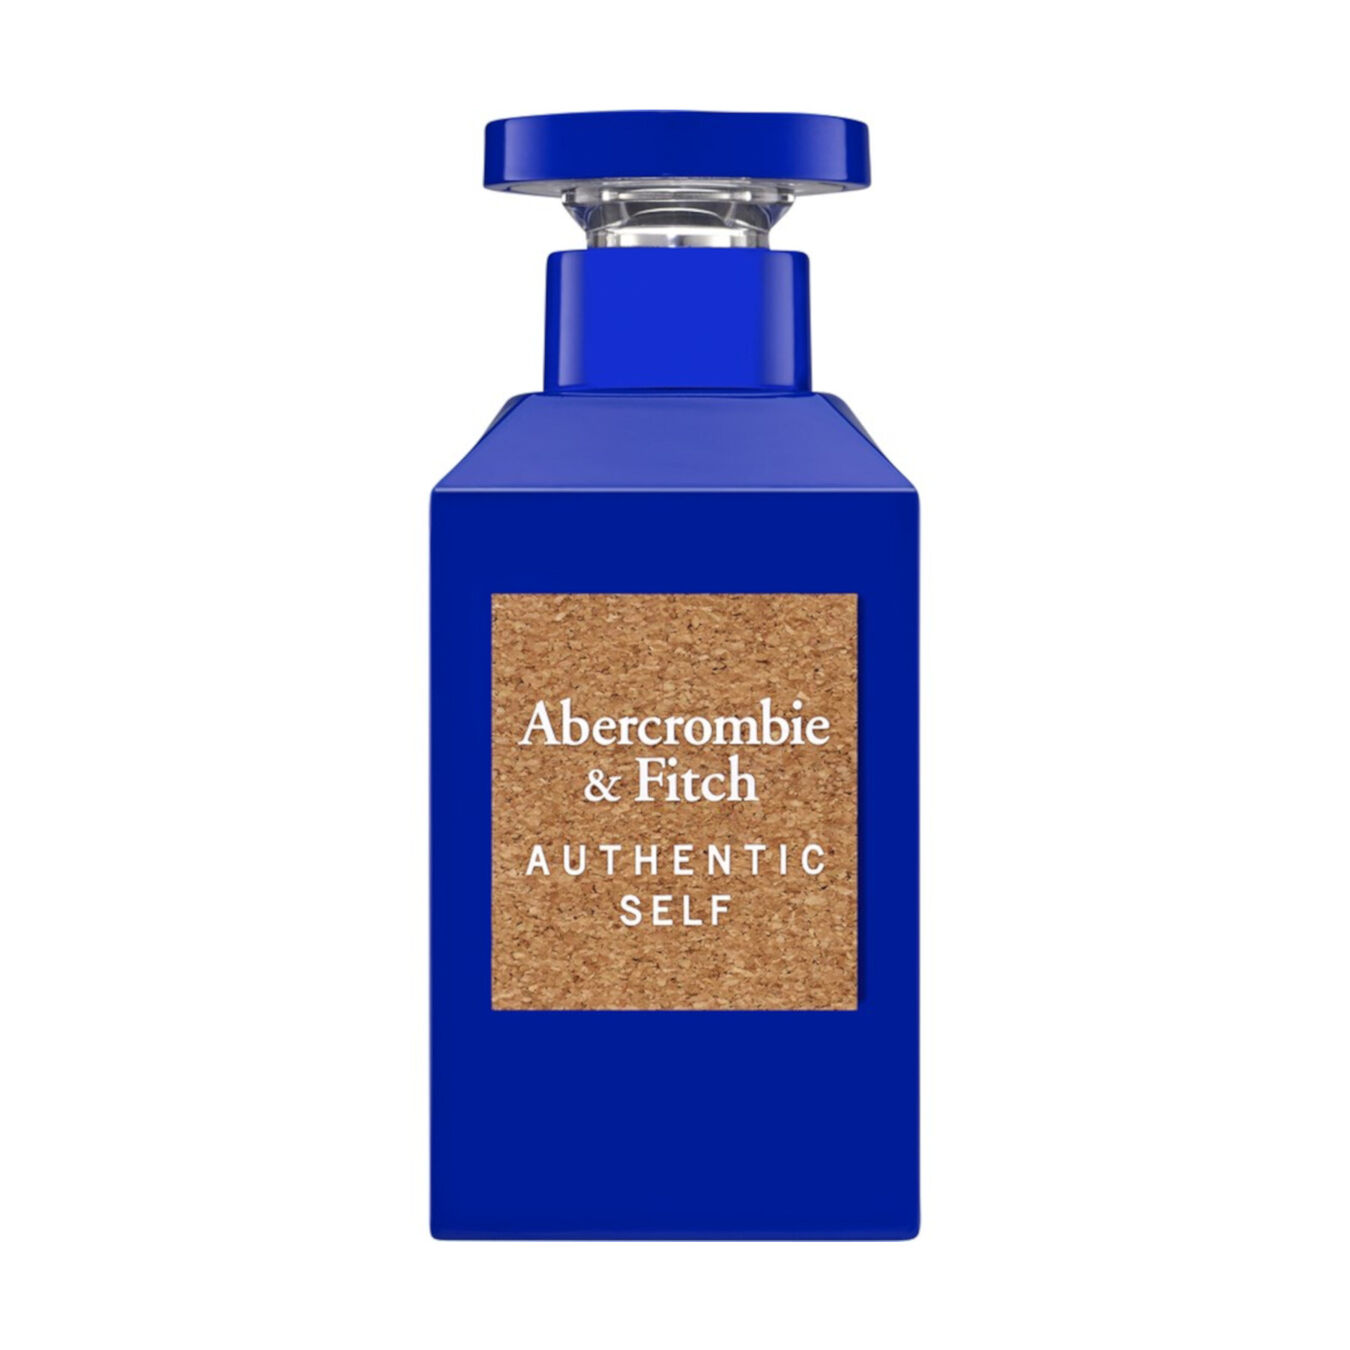 Abercrombie & Fitch Authentic Self for Men Eau de toilette 100 ml